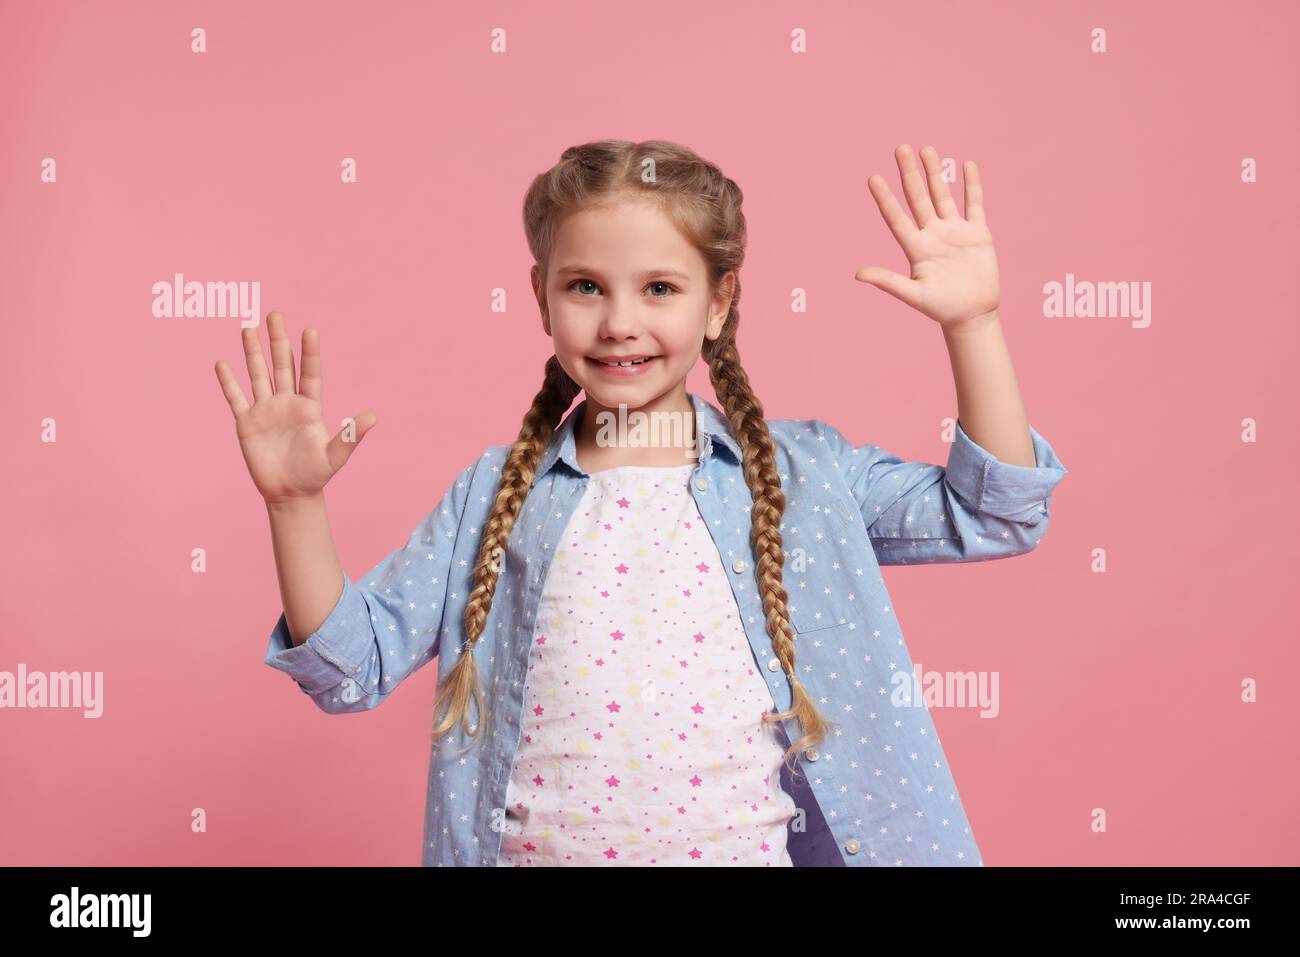 Glückliches Mädchen gibt High Five mit beiden Händen auf pinkfarbenem Hintergrund Stockfoto